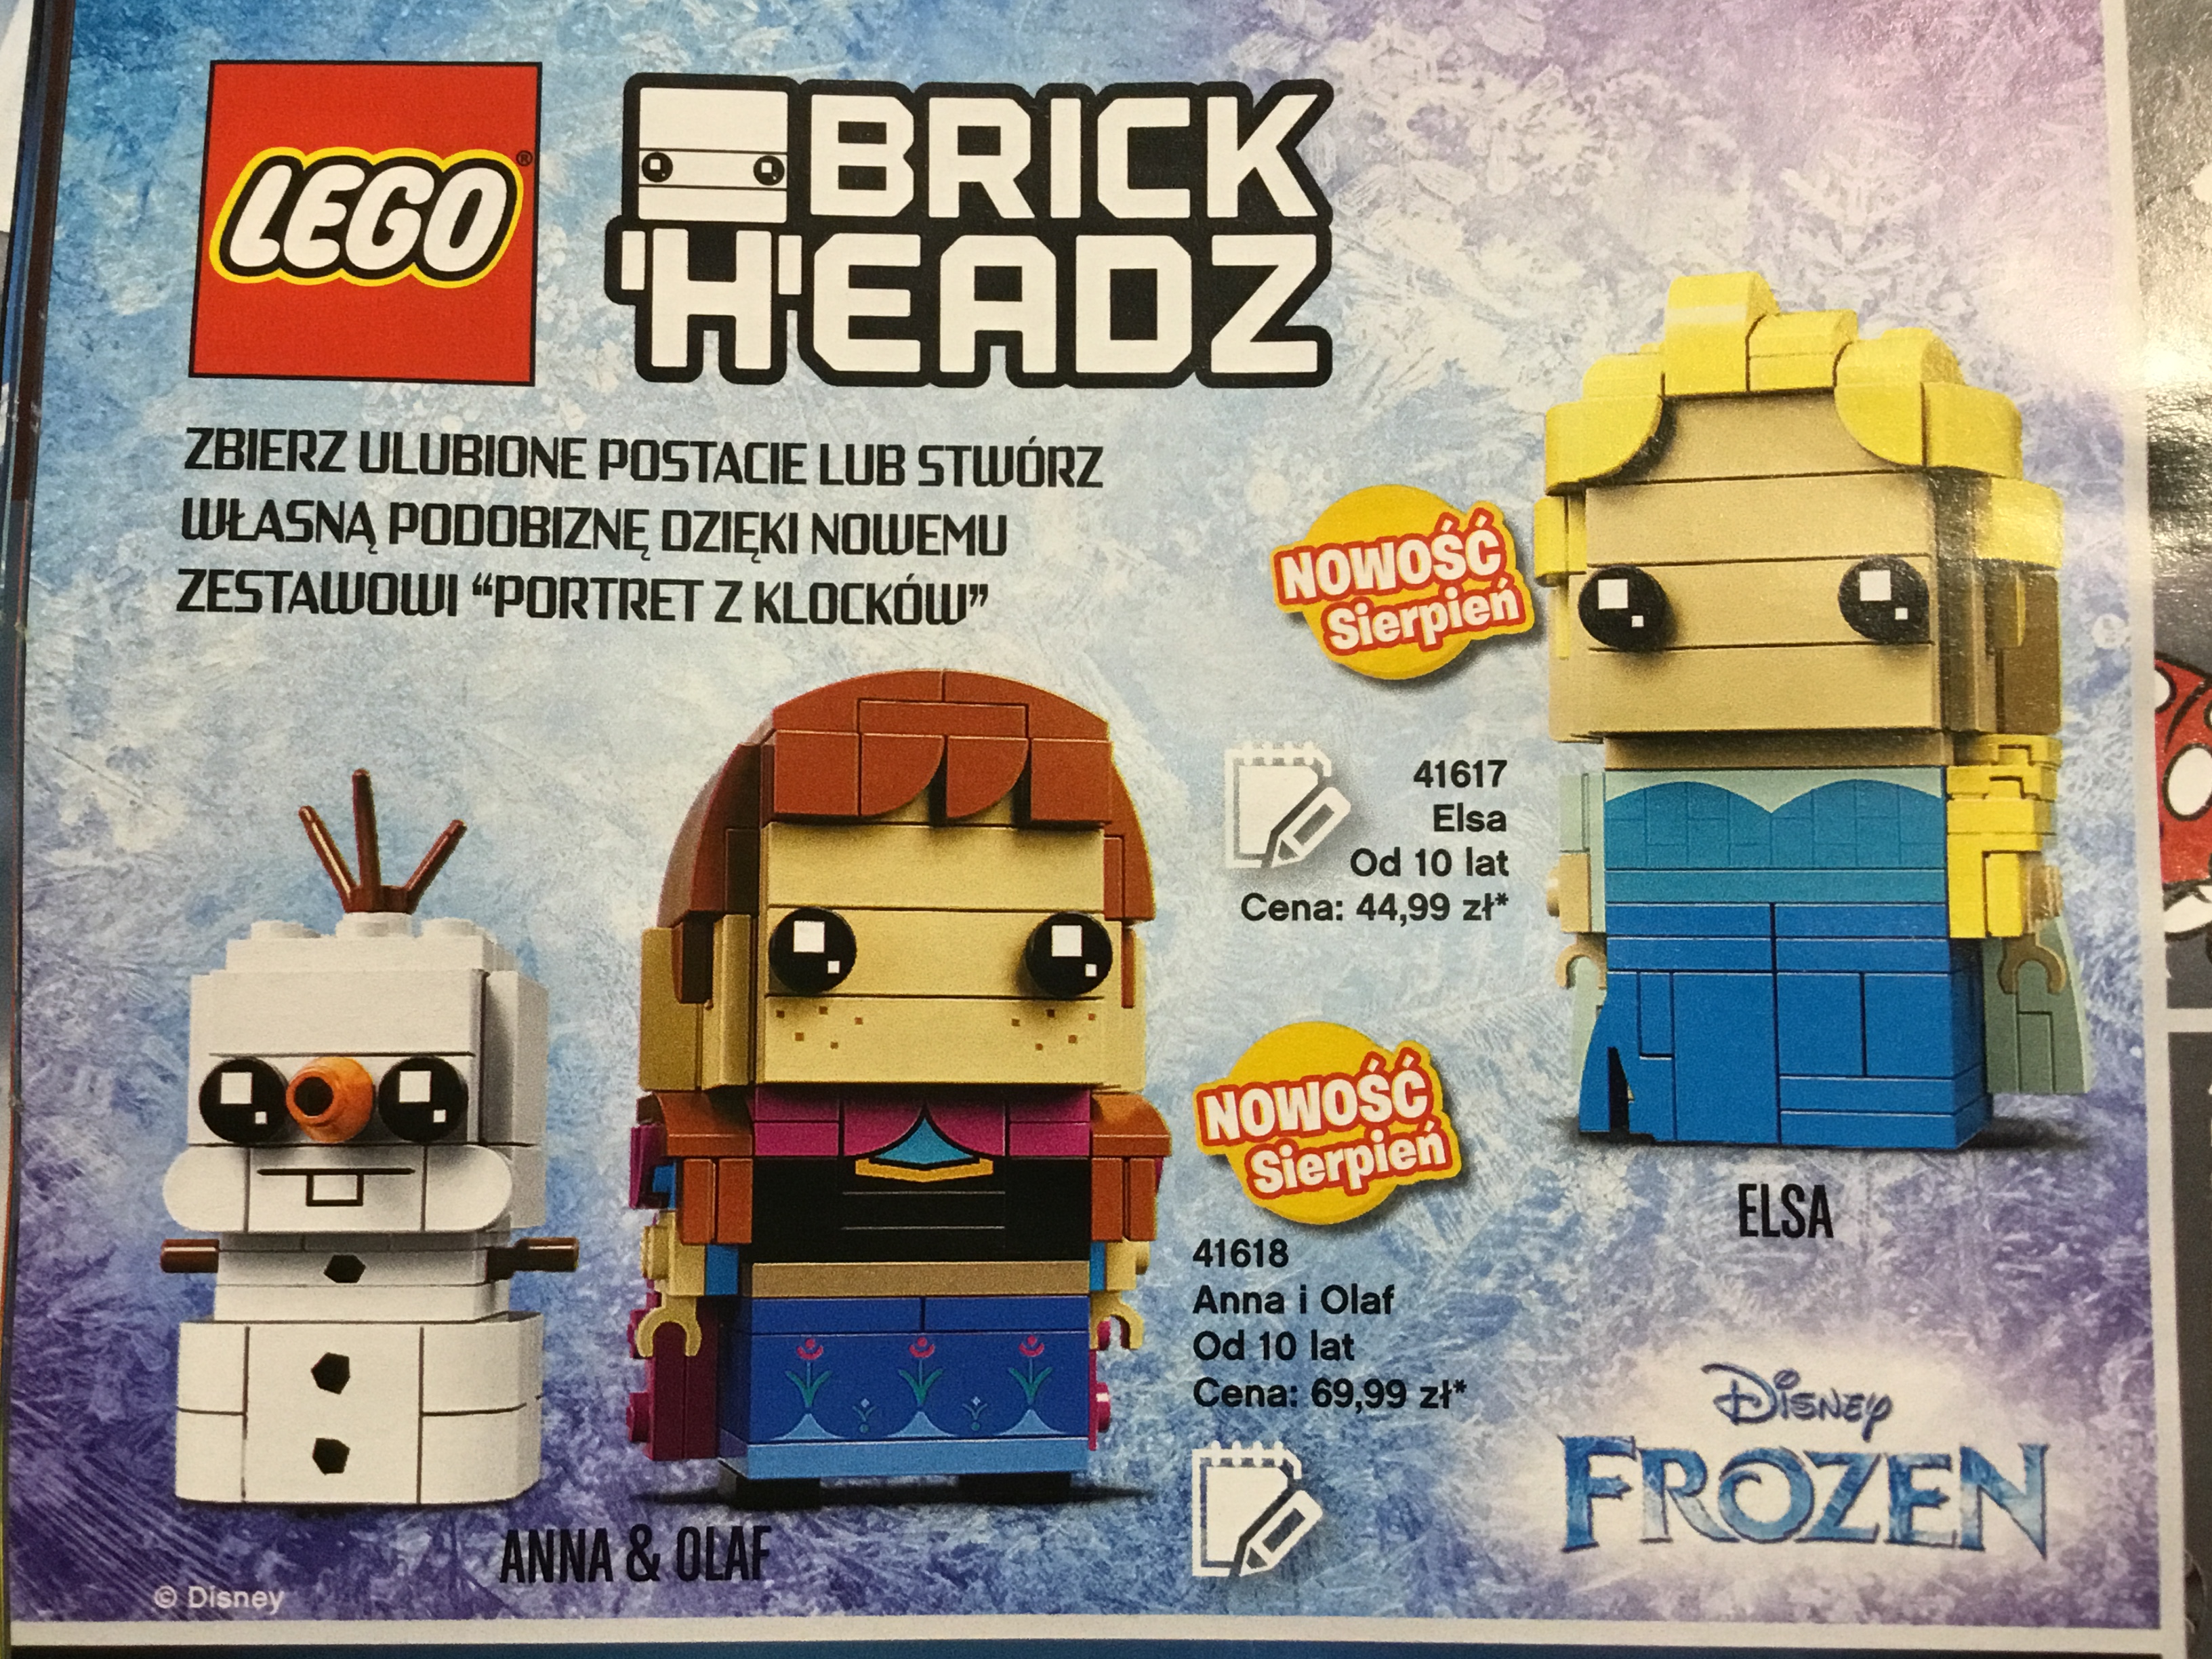 Si vous ªtes fan des BrickHeadz et de la gamme Frozen allias La Reine des Neiges vous allez ªtre content En effet les premiers visuels de ces figurines